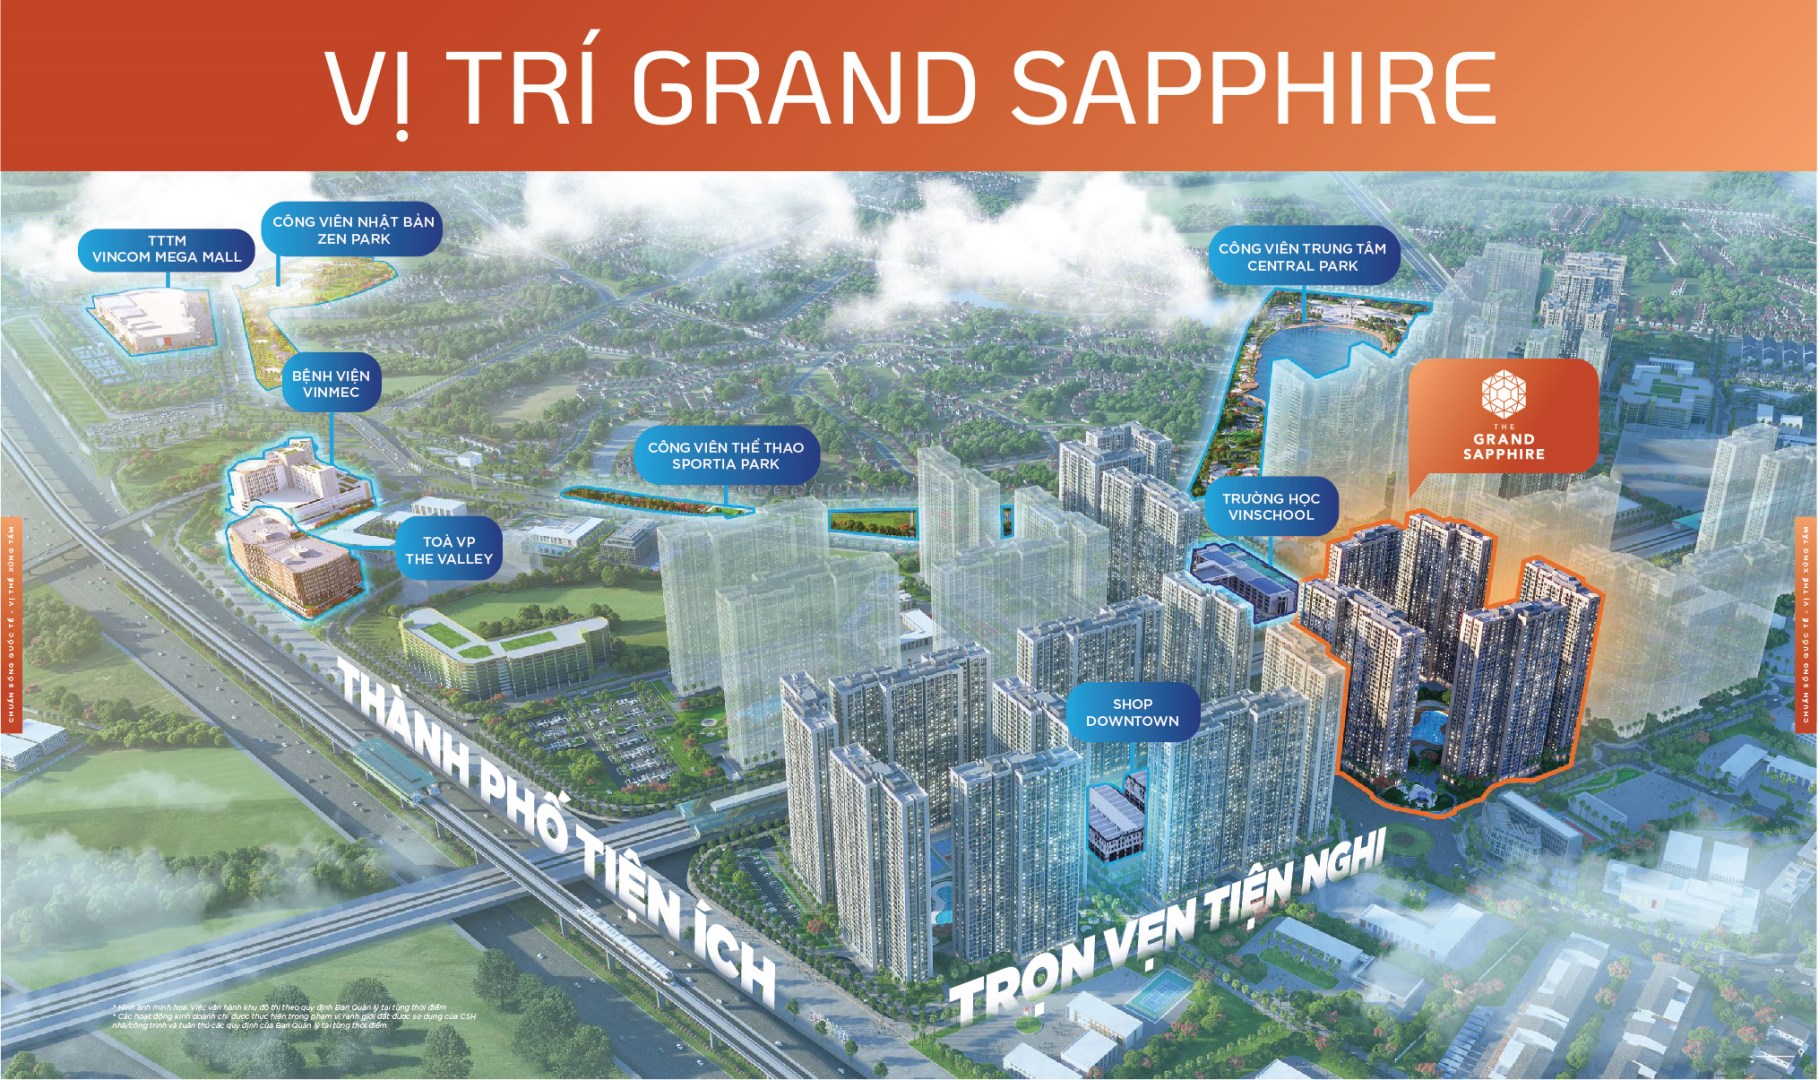 Grand Sapphire - Viên ngọc xanh quý giá của Vinhomes Smart City